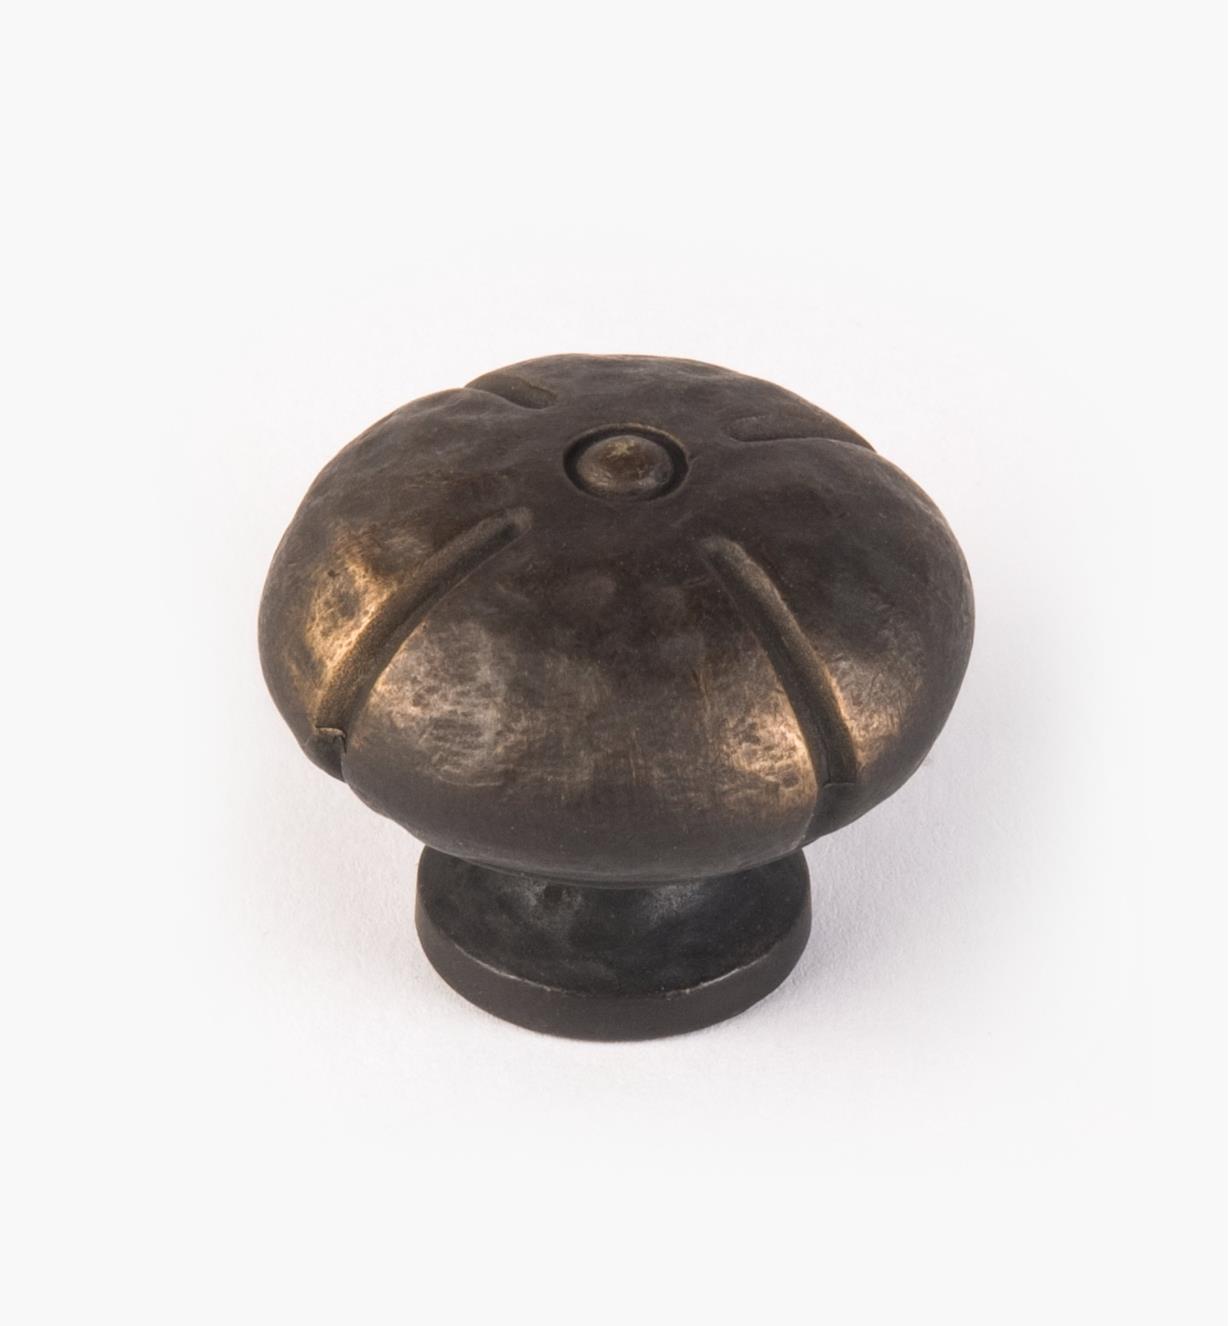 02A5170 - Bouton rond, série Sienne classique, fini bronze antique, 1 3/8 po